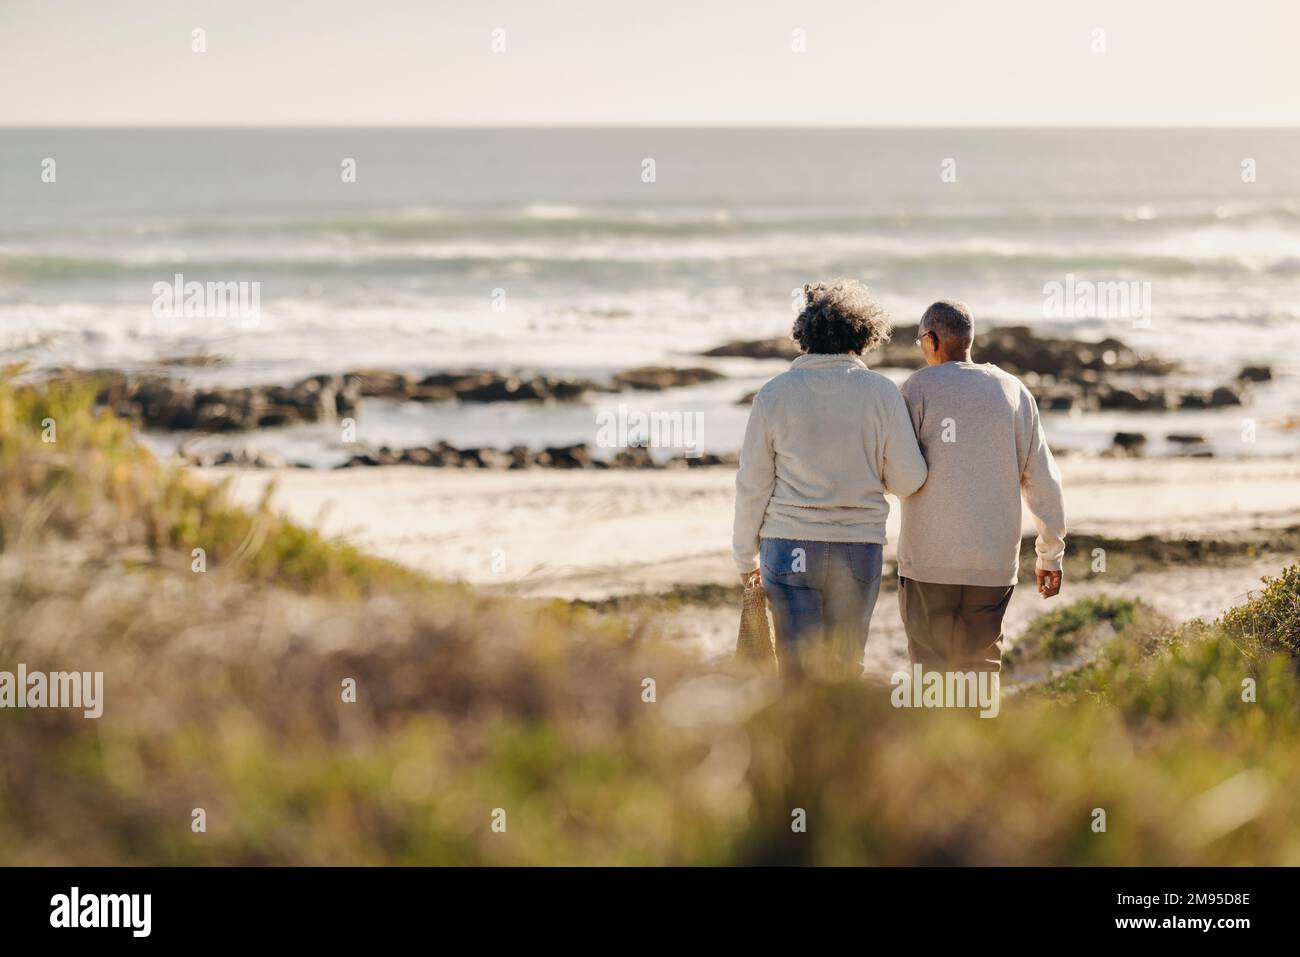 Rückblick auf ein romantisches Seniorenpaar, das zum Strand für ein Picknick ging. Sorgenfreies älteres Ehepaar, das nach seiner Pensionierung einen Badeurlaub macht. Stockfoto